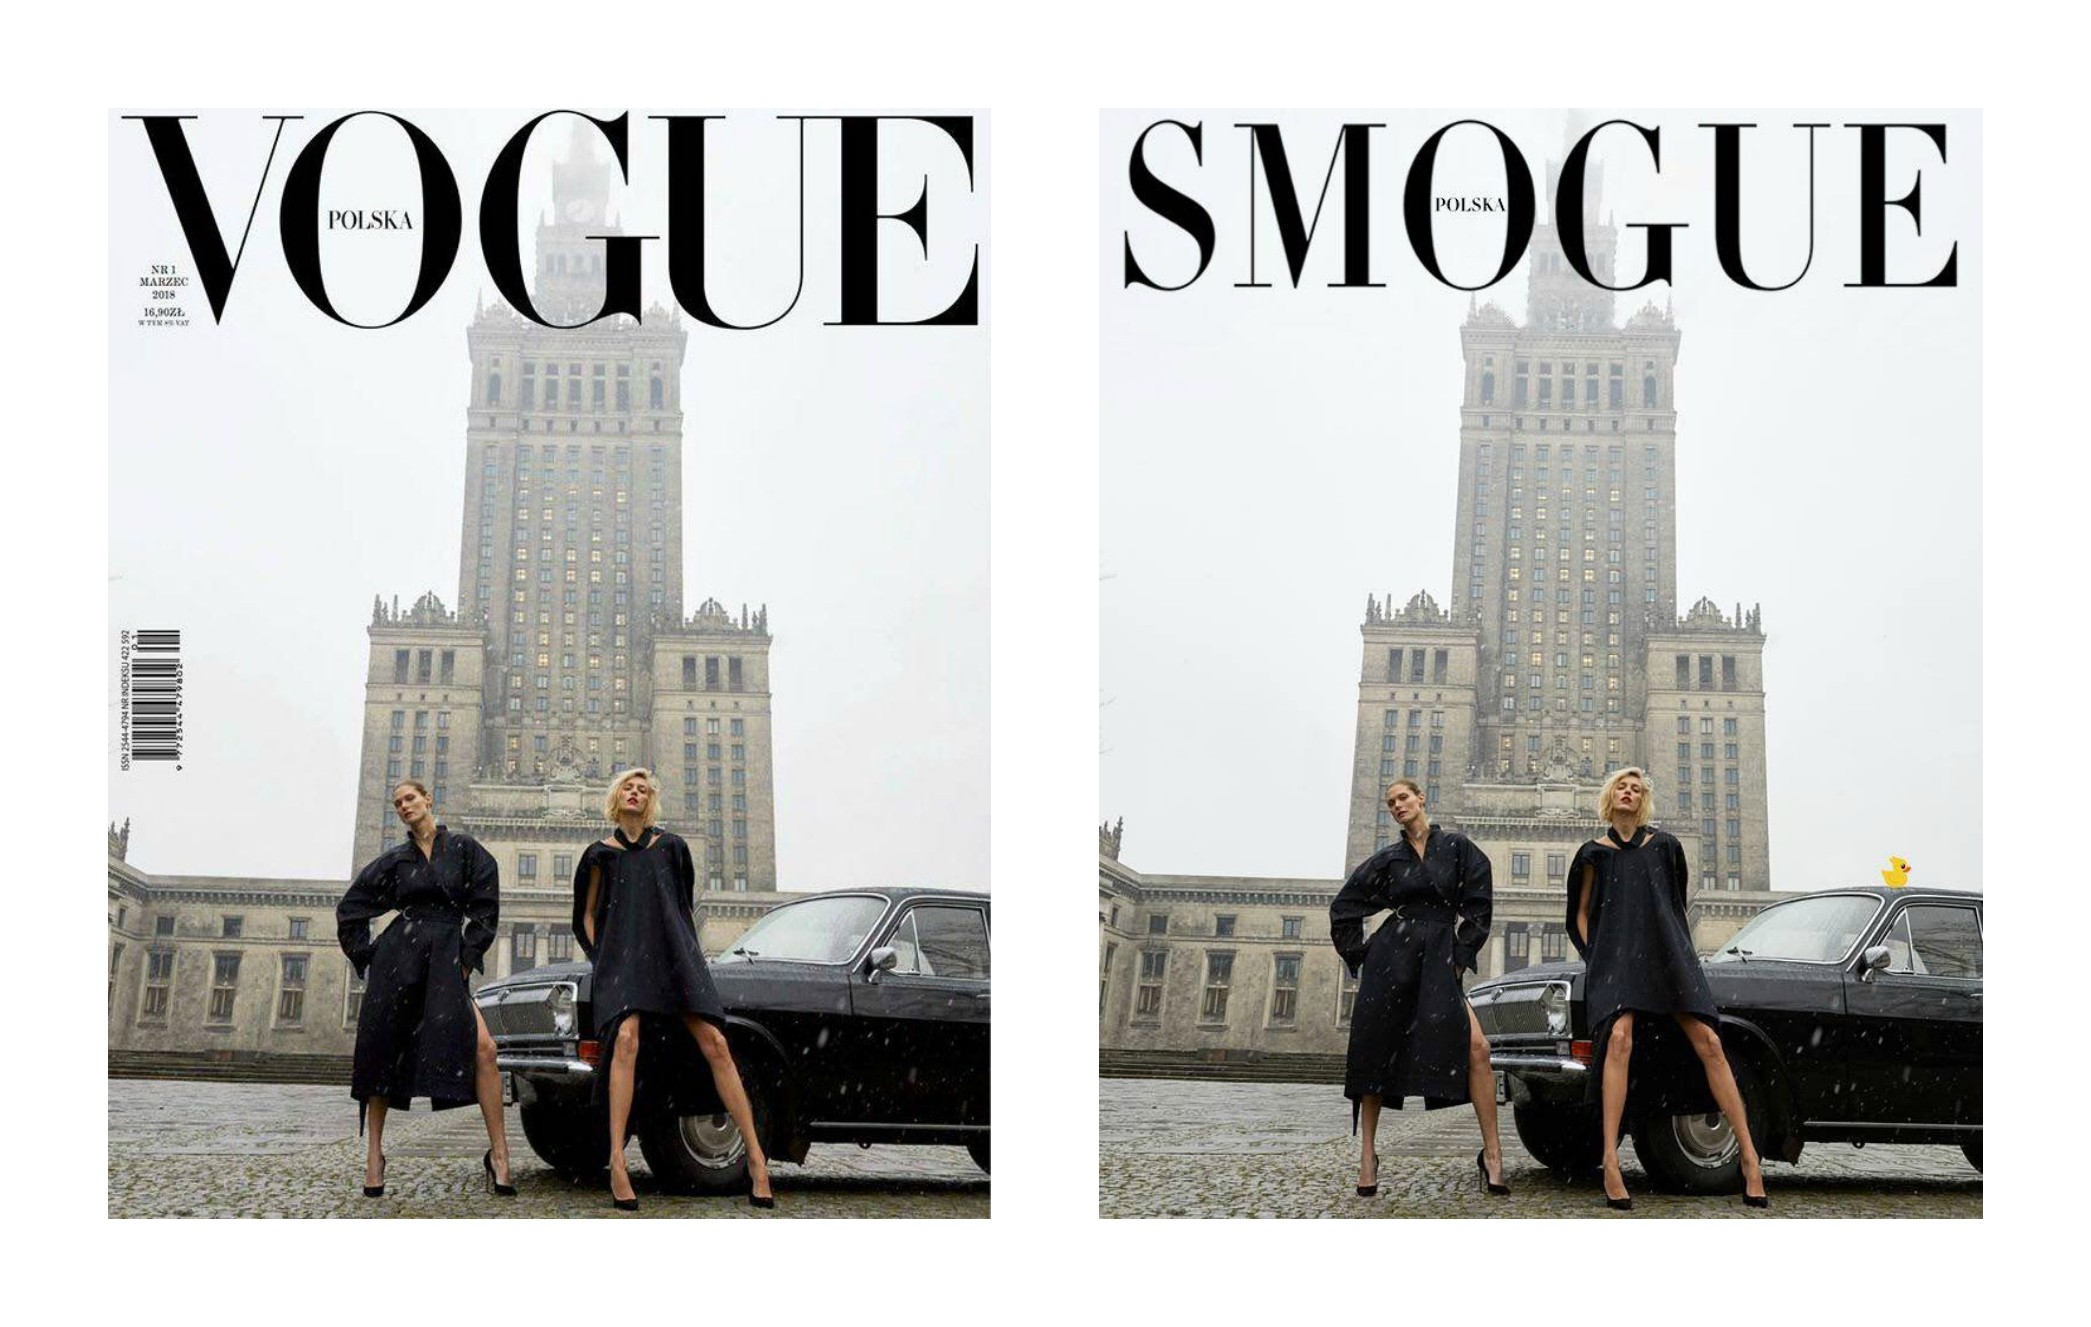 Обложка первого польского Vogue вызвала скандал в Польше